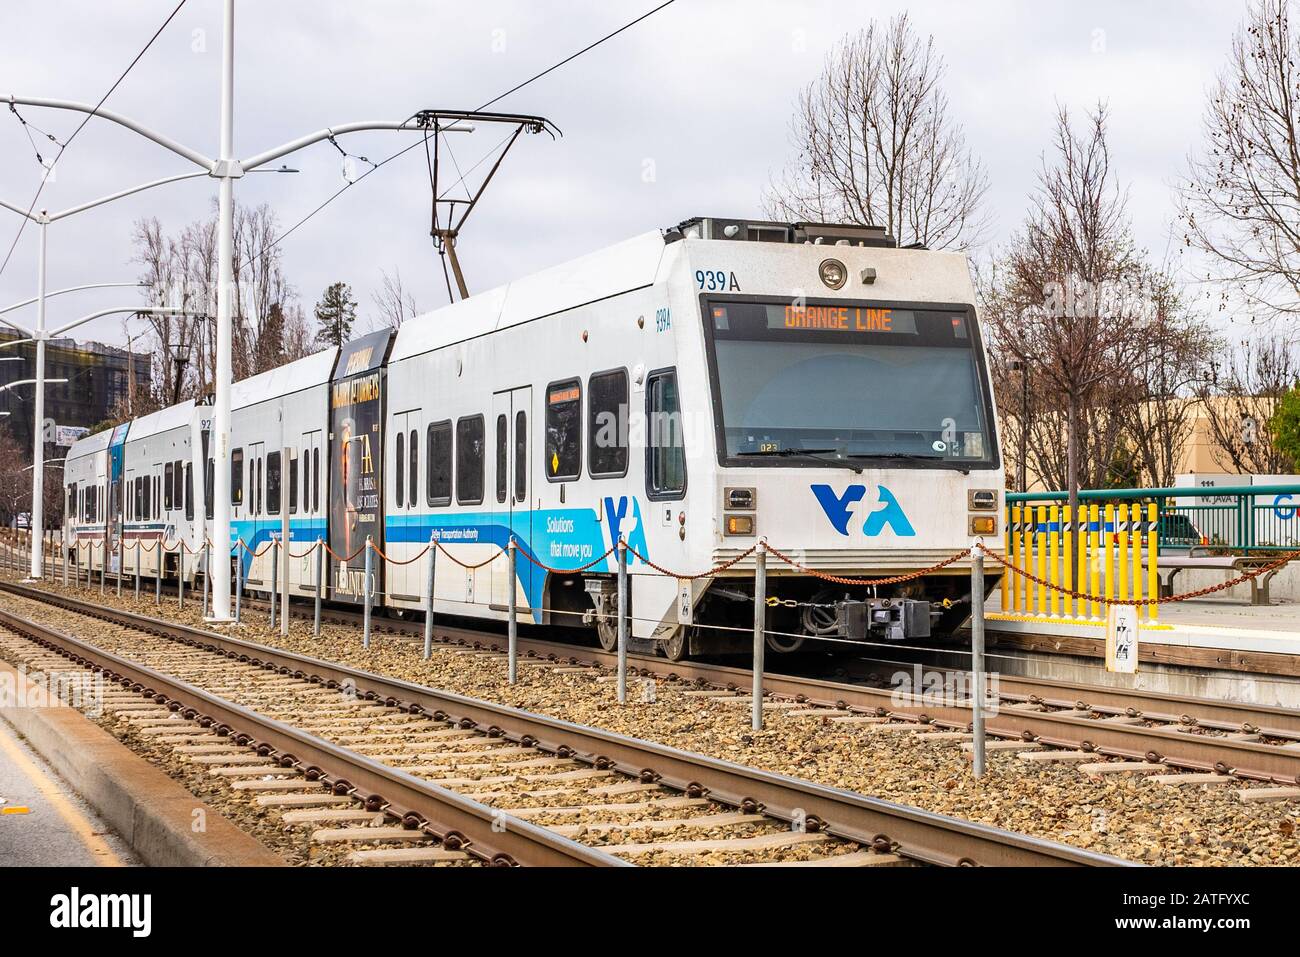 27 gennaio 2020 Sunnyvale / CA / USA - treno VTA sulla linea Orange appena lanciata che collega Mountain View a San Jose; la linea VTA Light Rail è un sistema servi Foto Stock